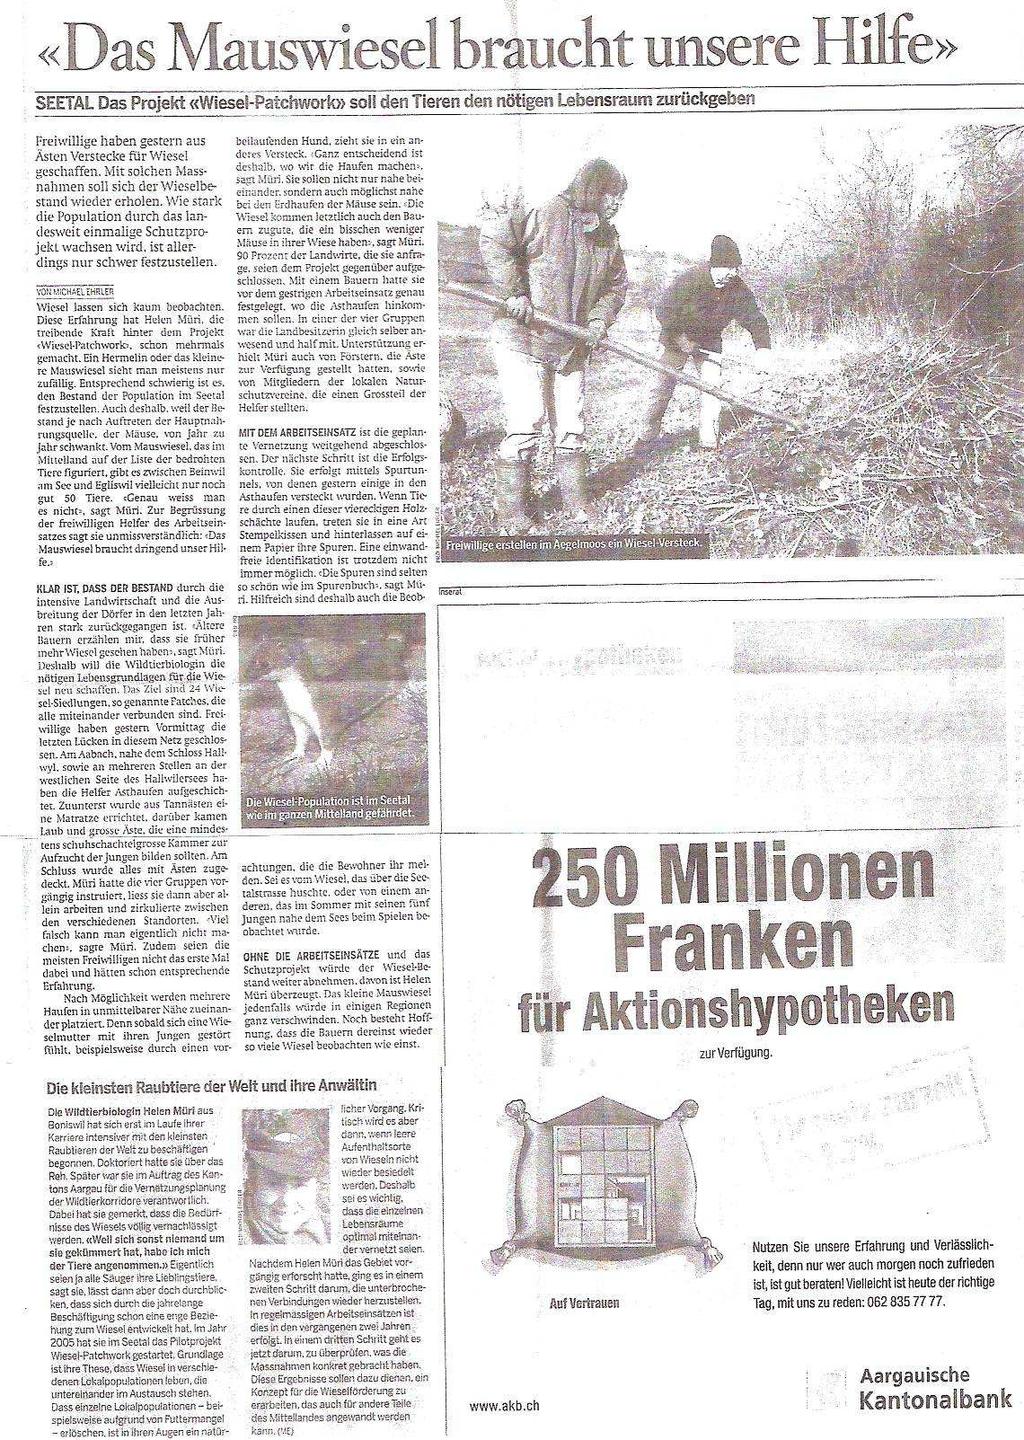 Echo in den Medien Die Medien begleiteten das Projekt durch mehrere Berichte (Aargauer Zeitung, Lenzburger Bezirksanzeiger, Wynentaler).